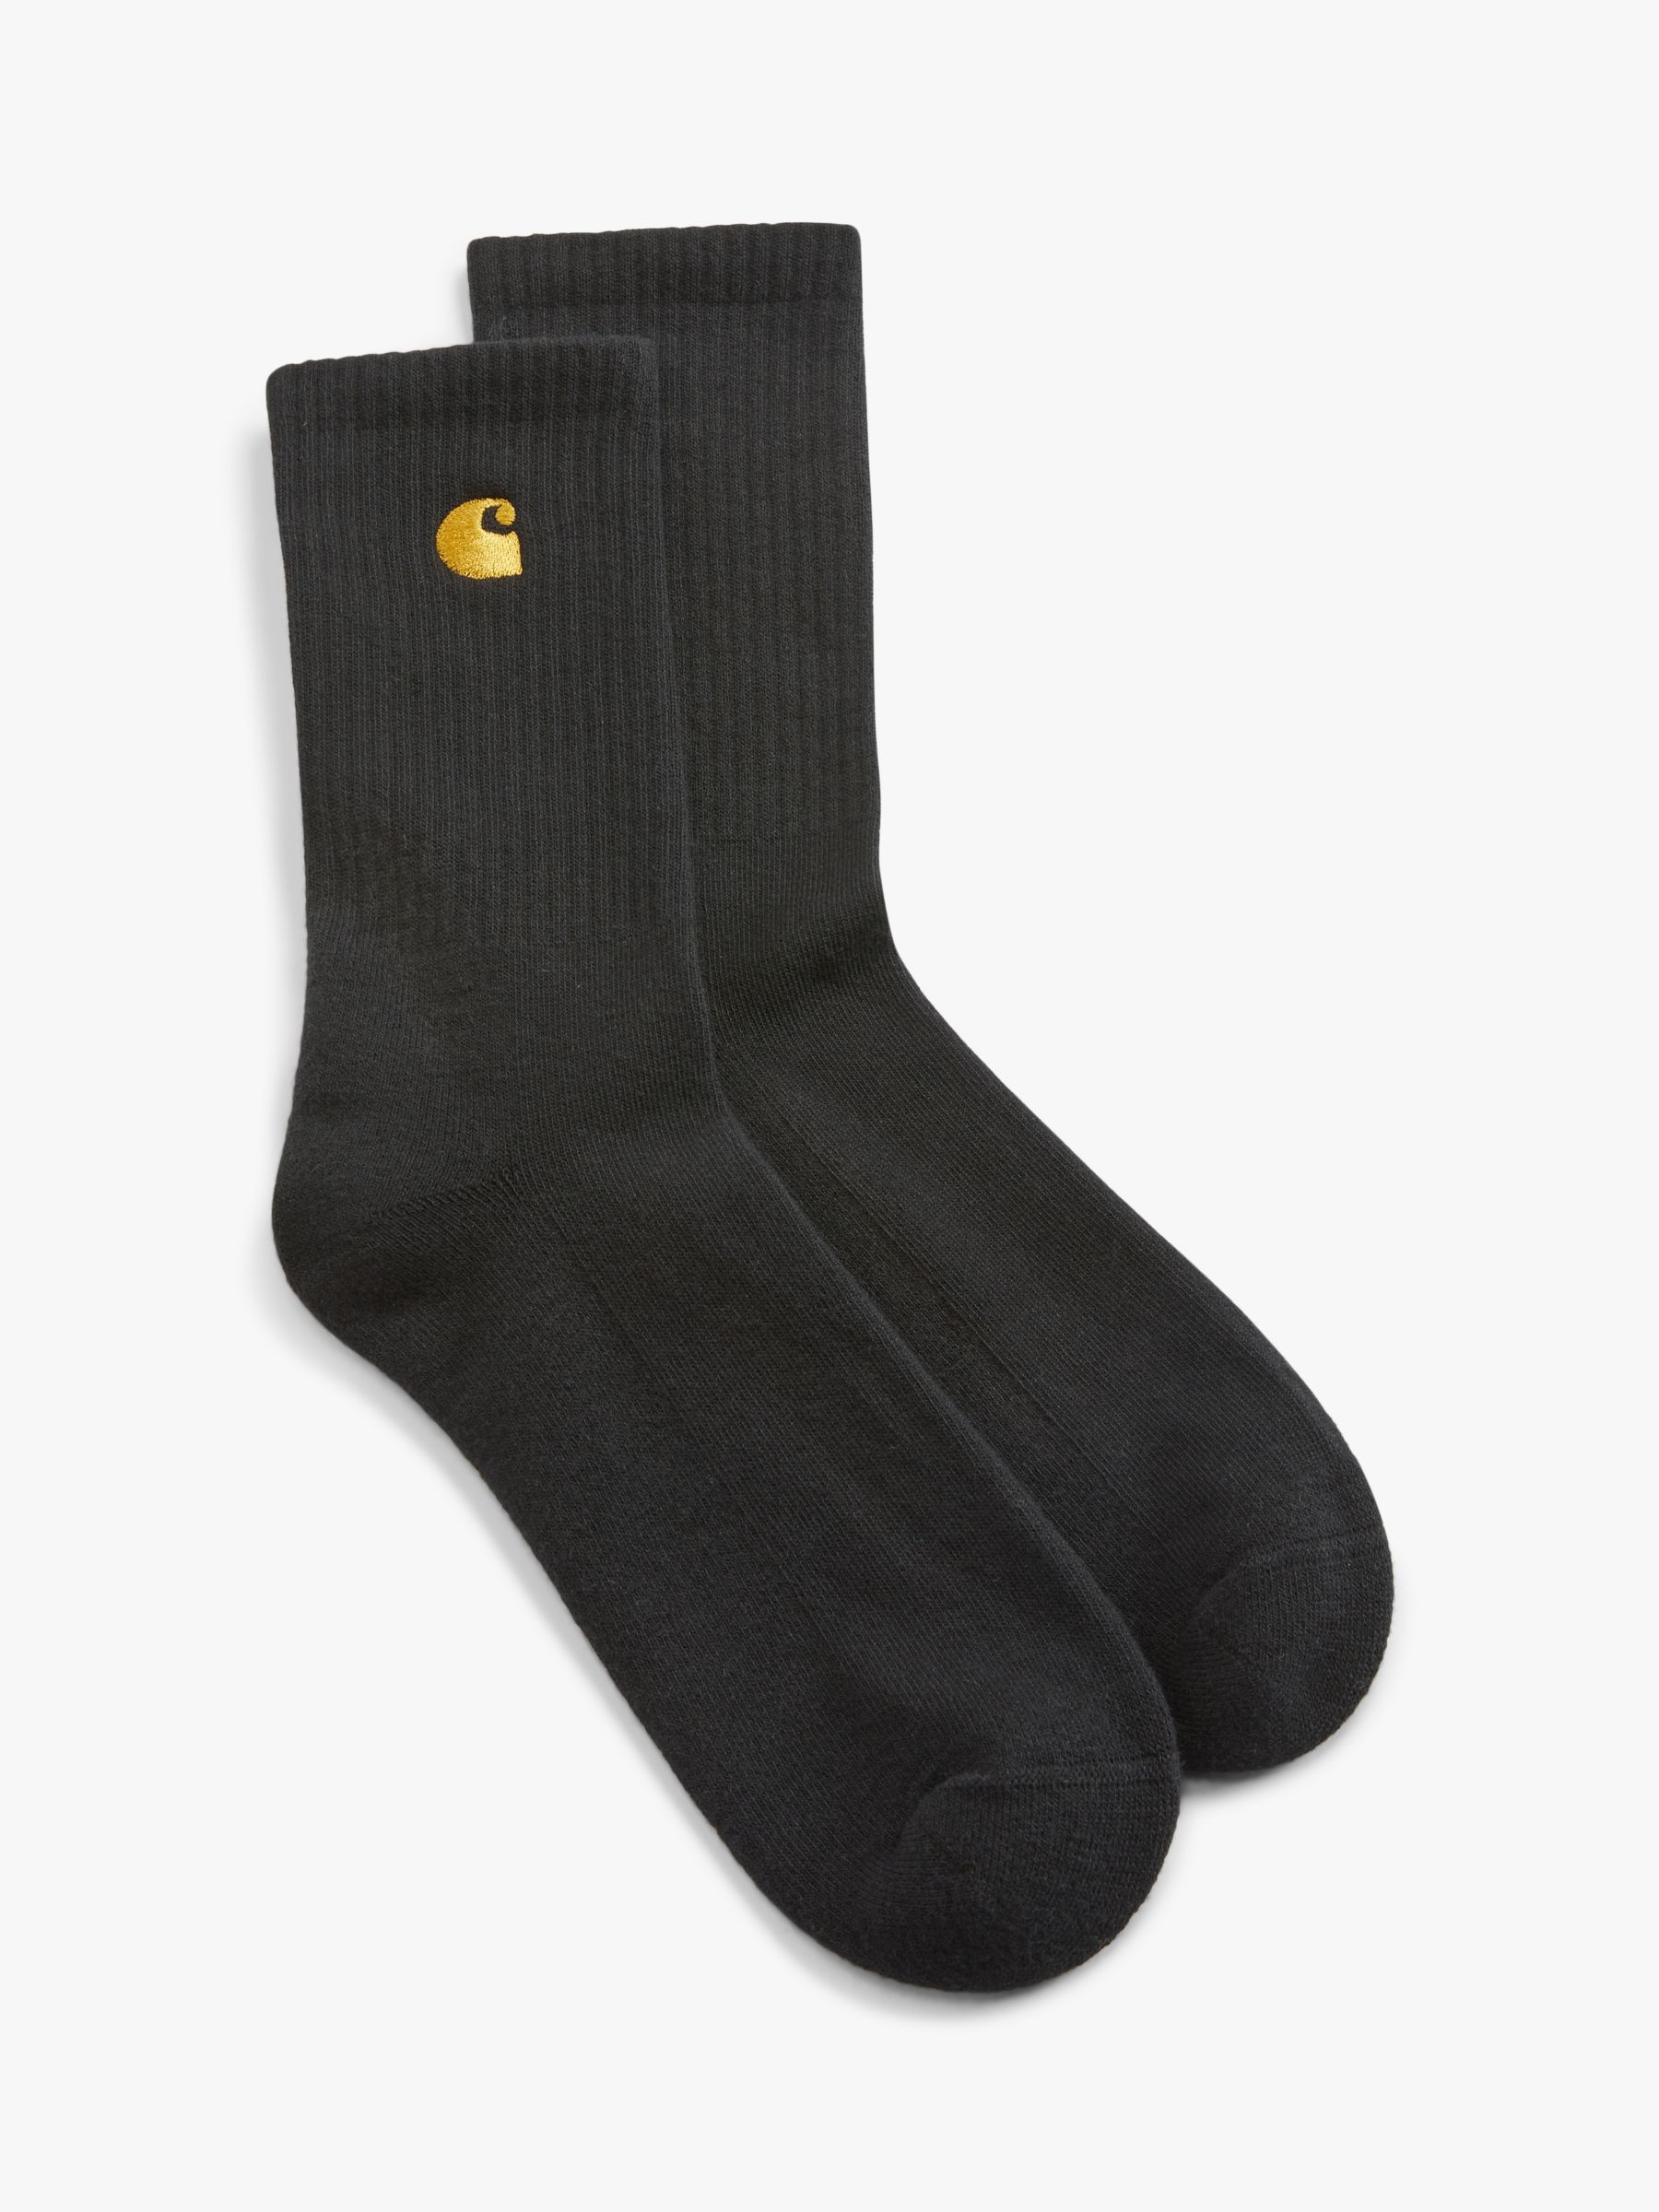 Carhartt WIP Chase Socks, One Size, Black